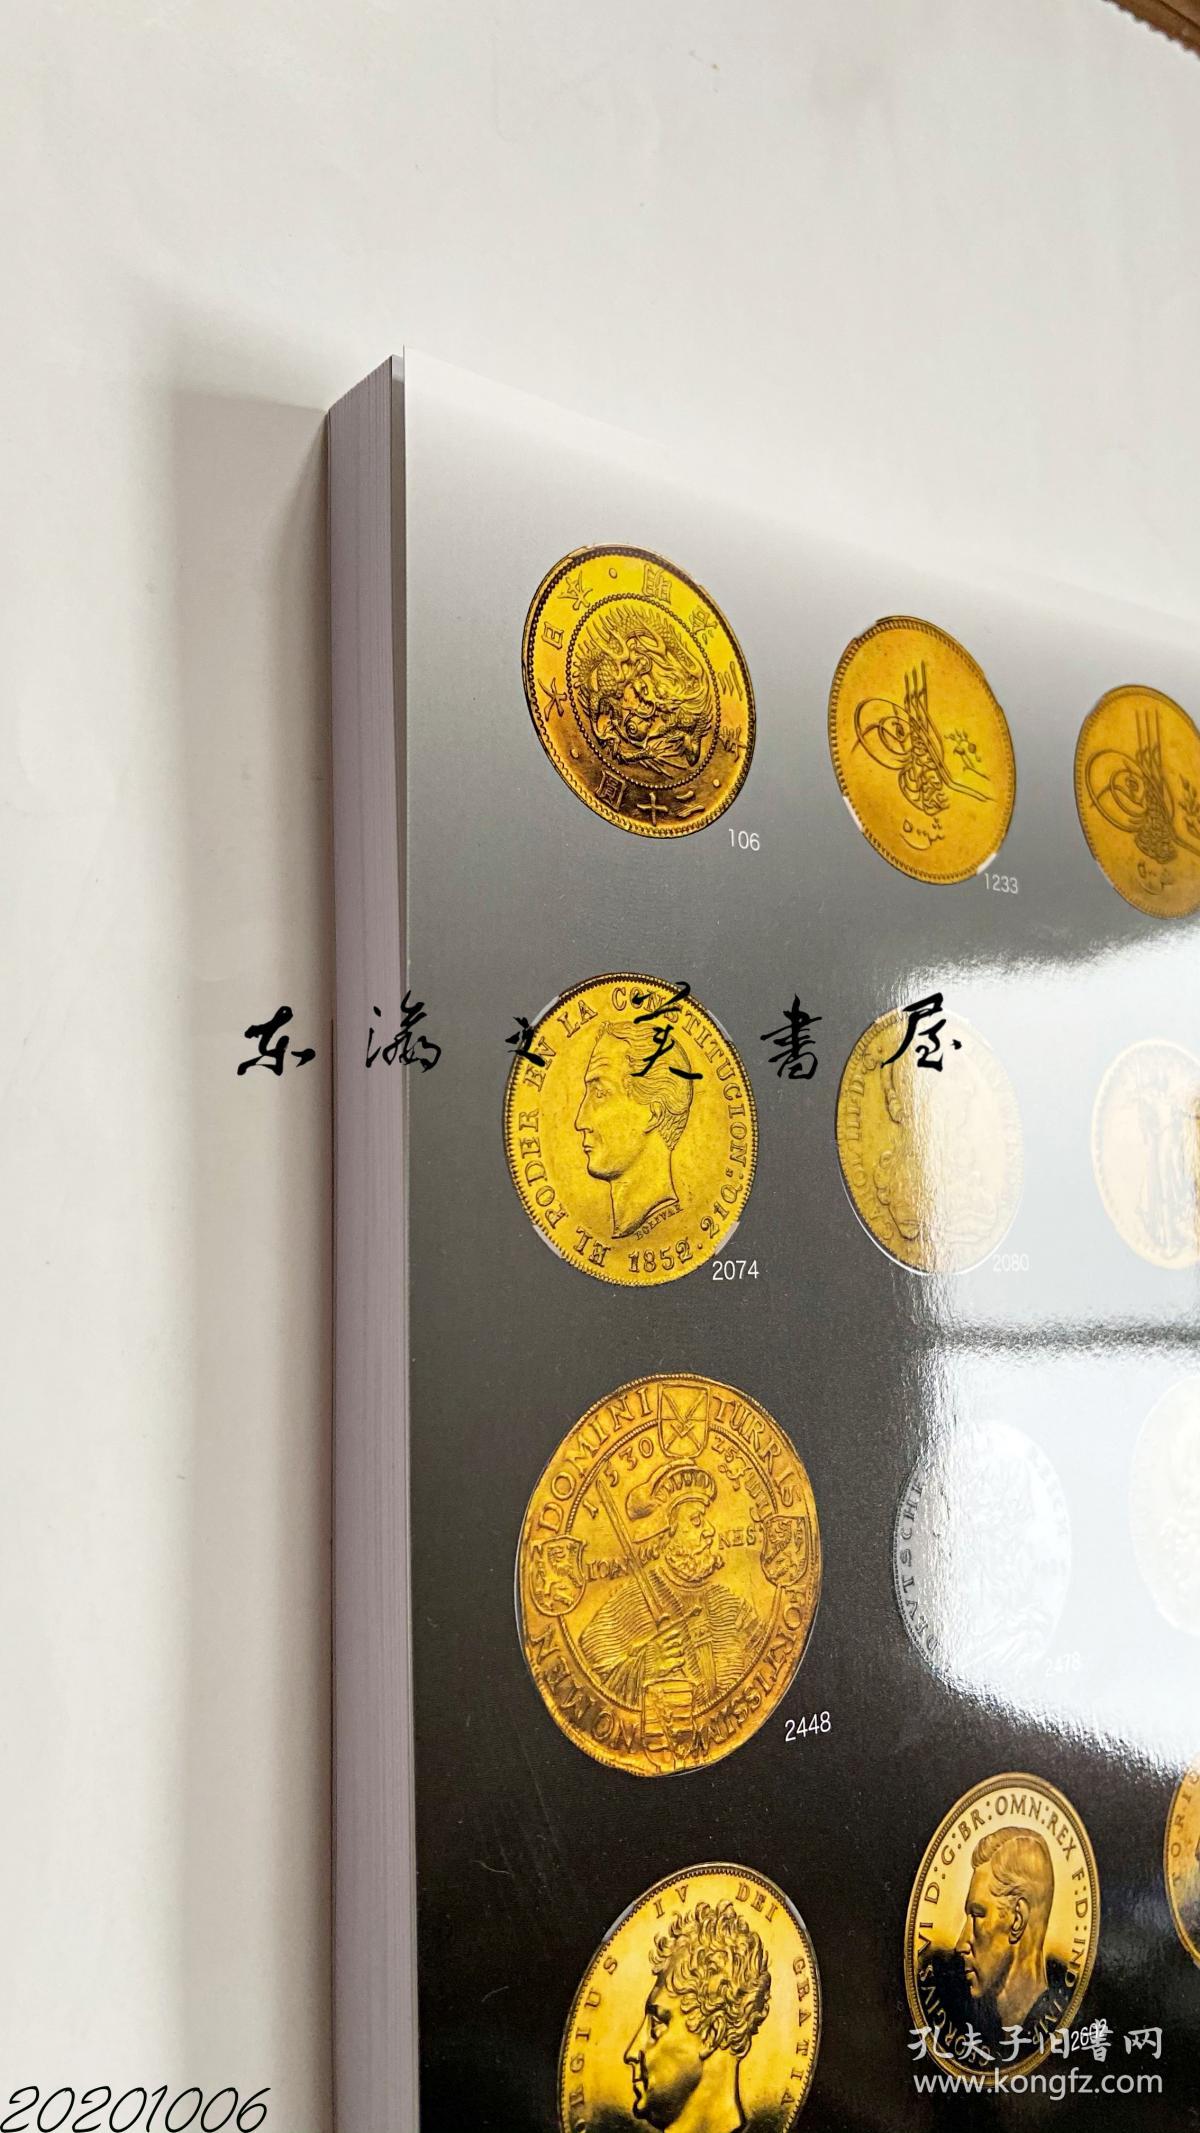 国内现货 Auction world 环球拍卖 第22回 图录 硬币 纸币 世界各地 包括中国的硬币纸币等 2020年10月 净重1公斤